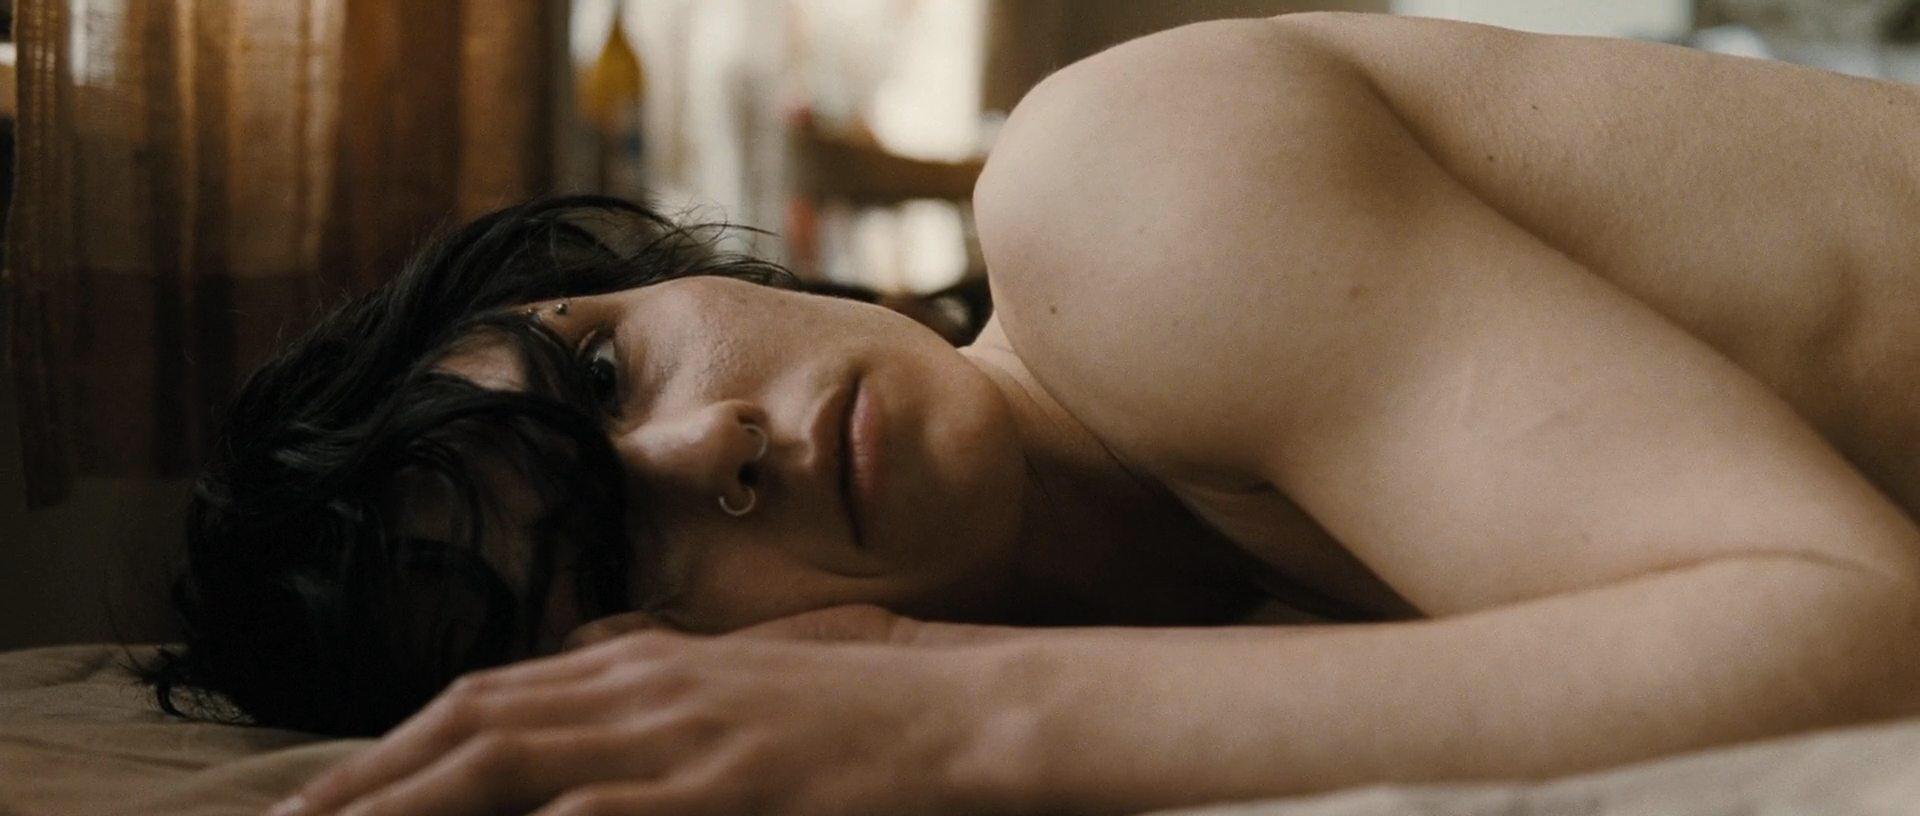 Кадр из фильма Девушка с татуировкой дракона / Män som hatar kvinnor (2009)